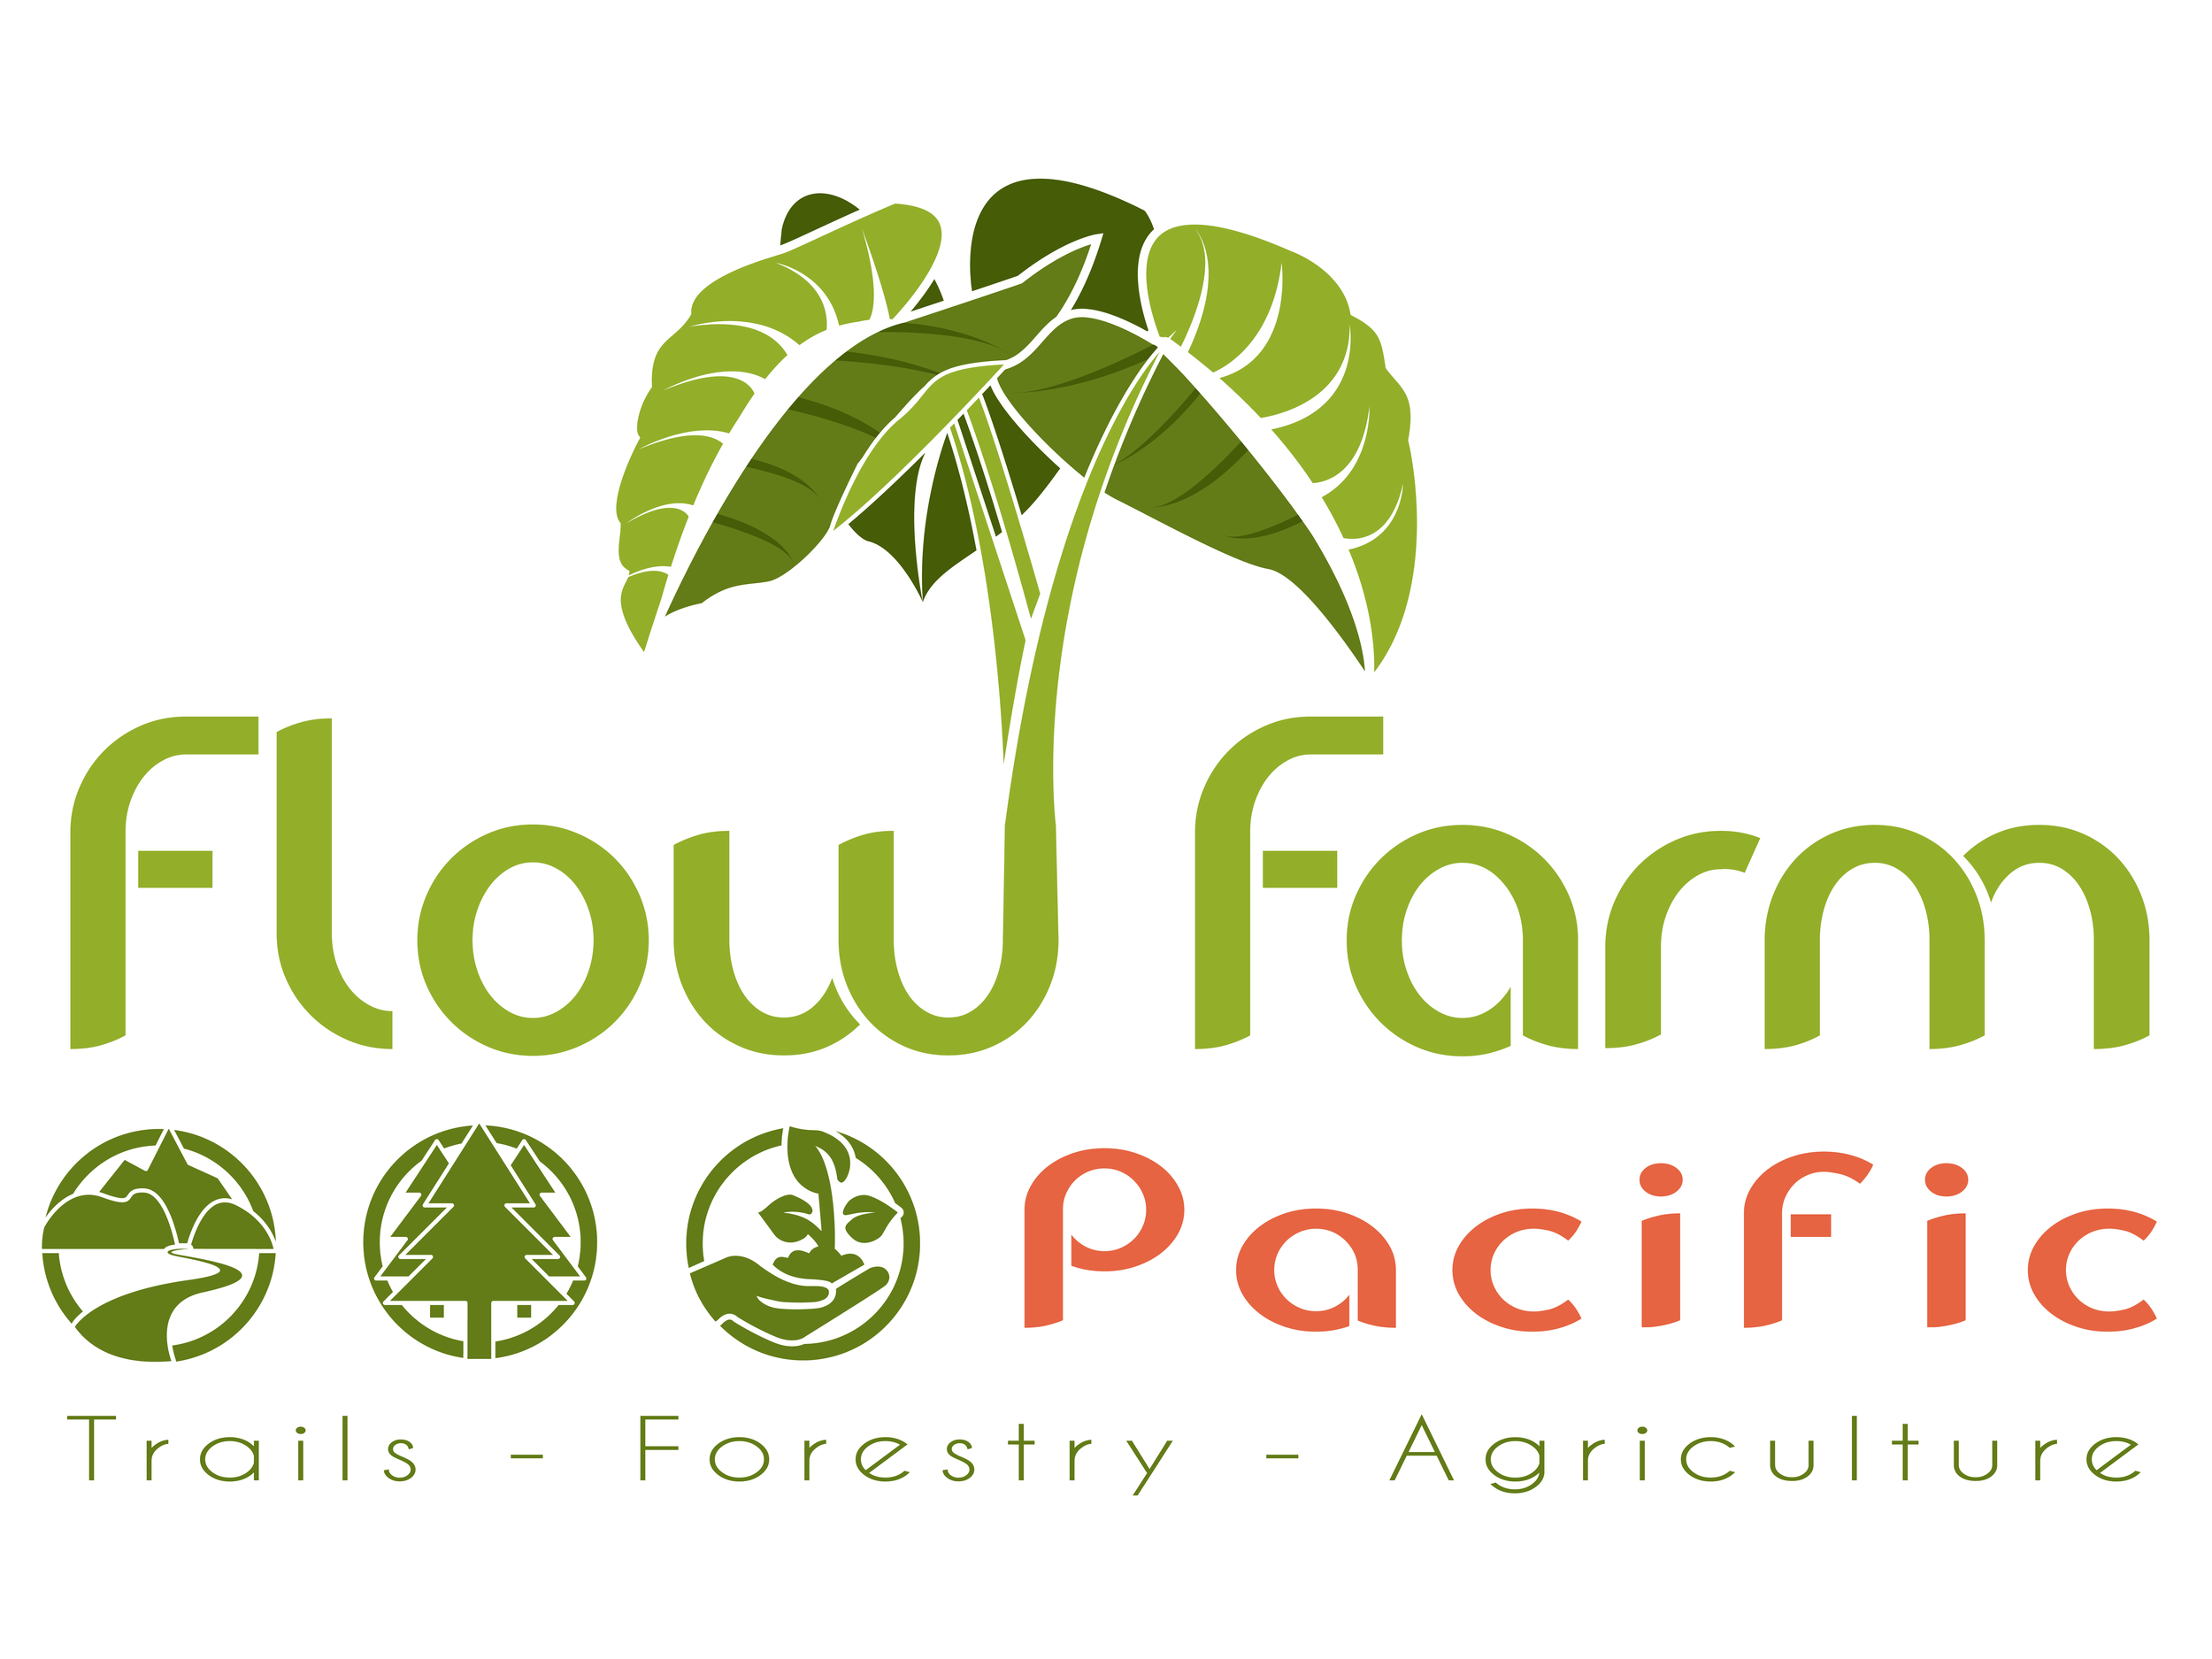 Flow Farm Pacific